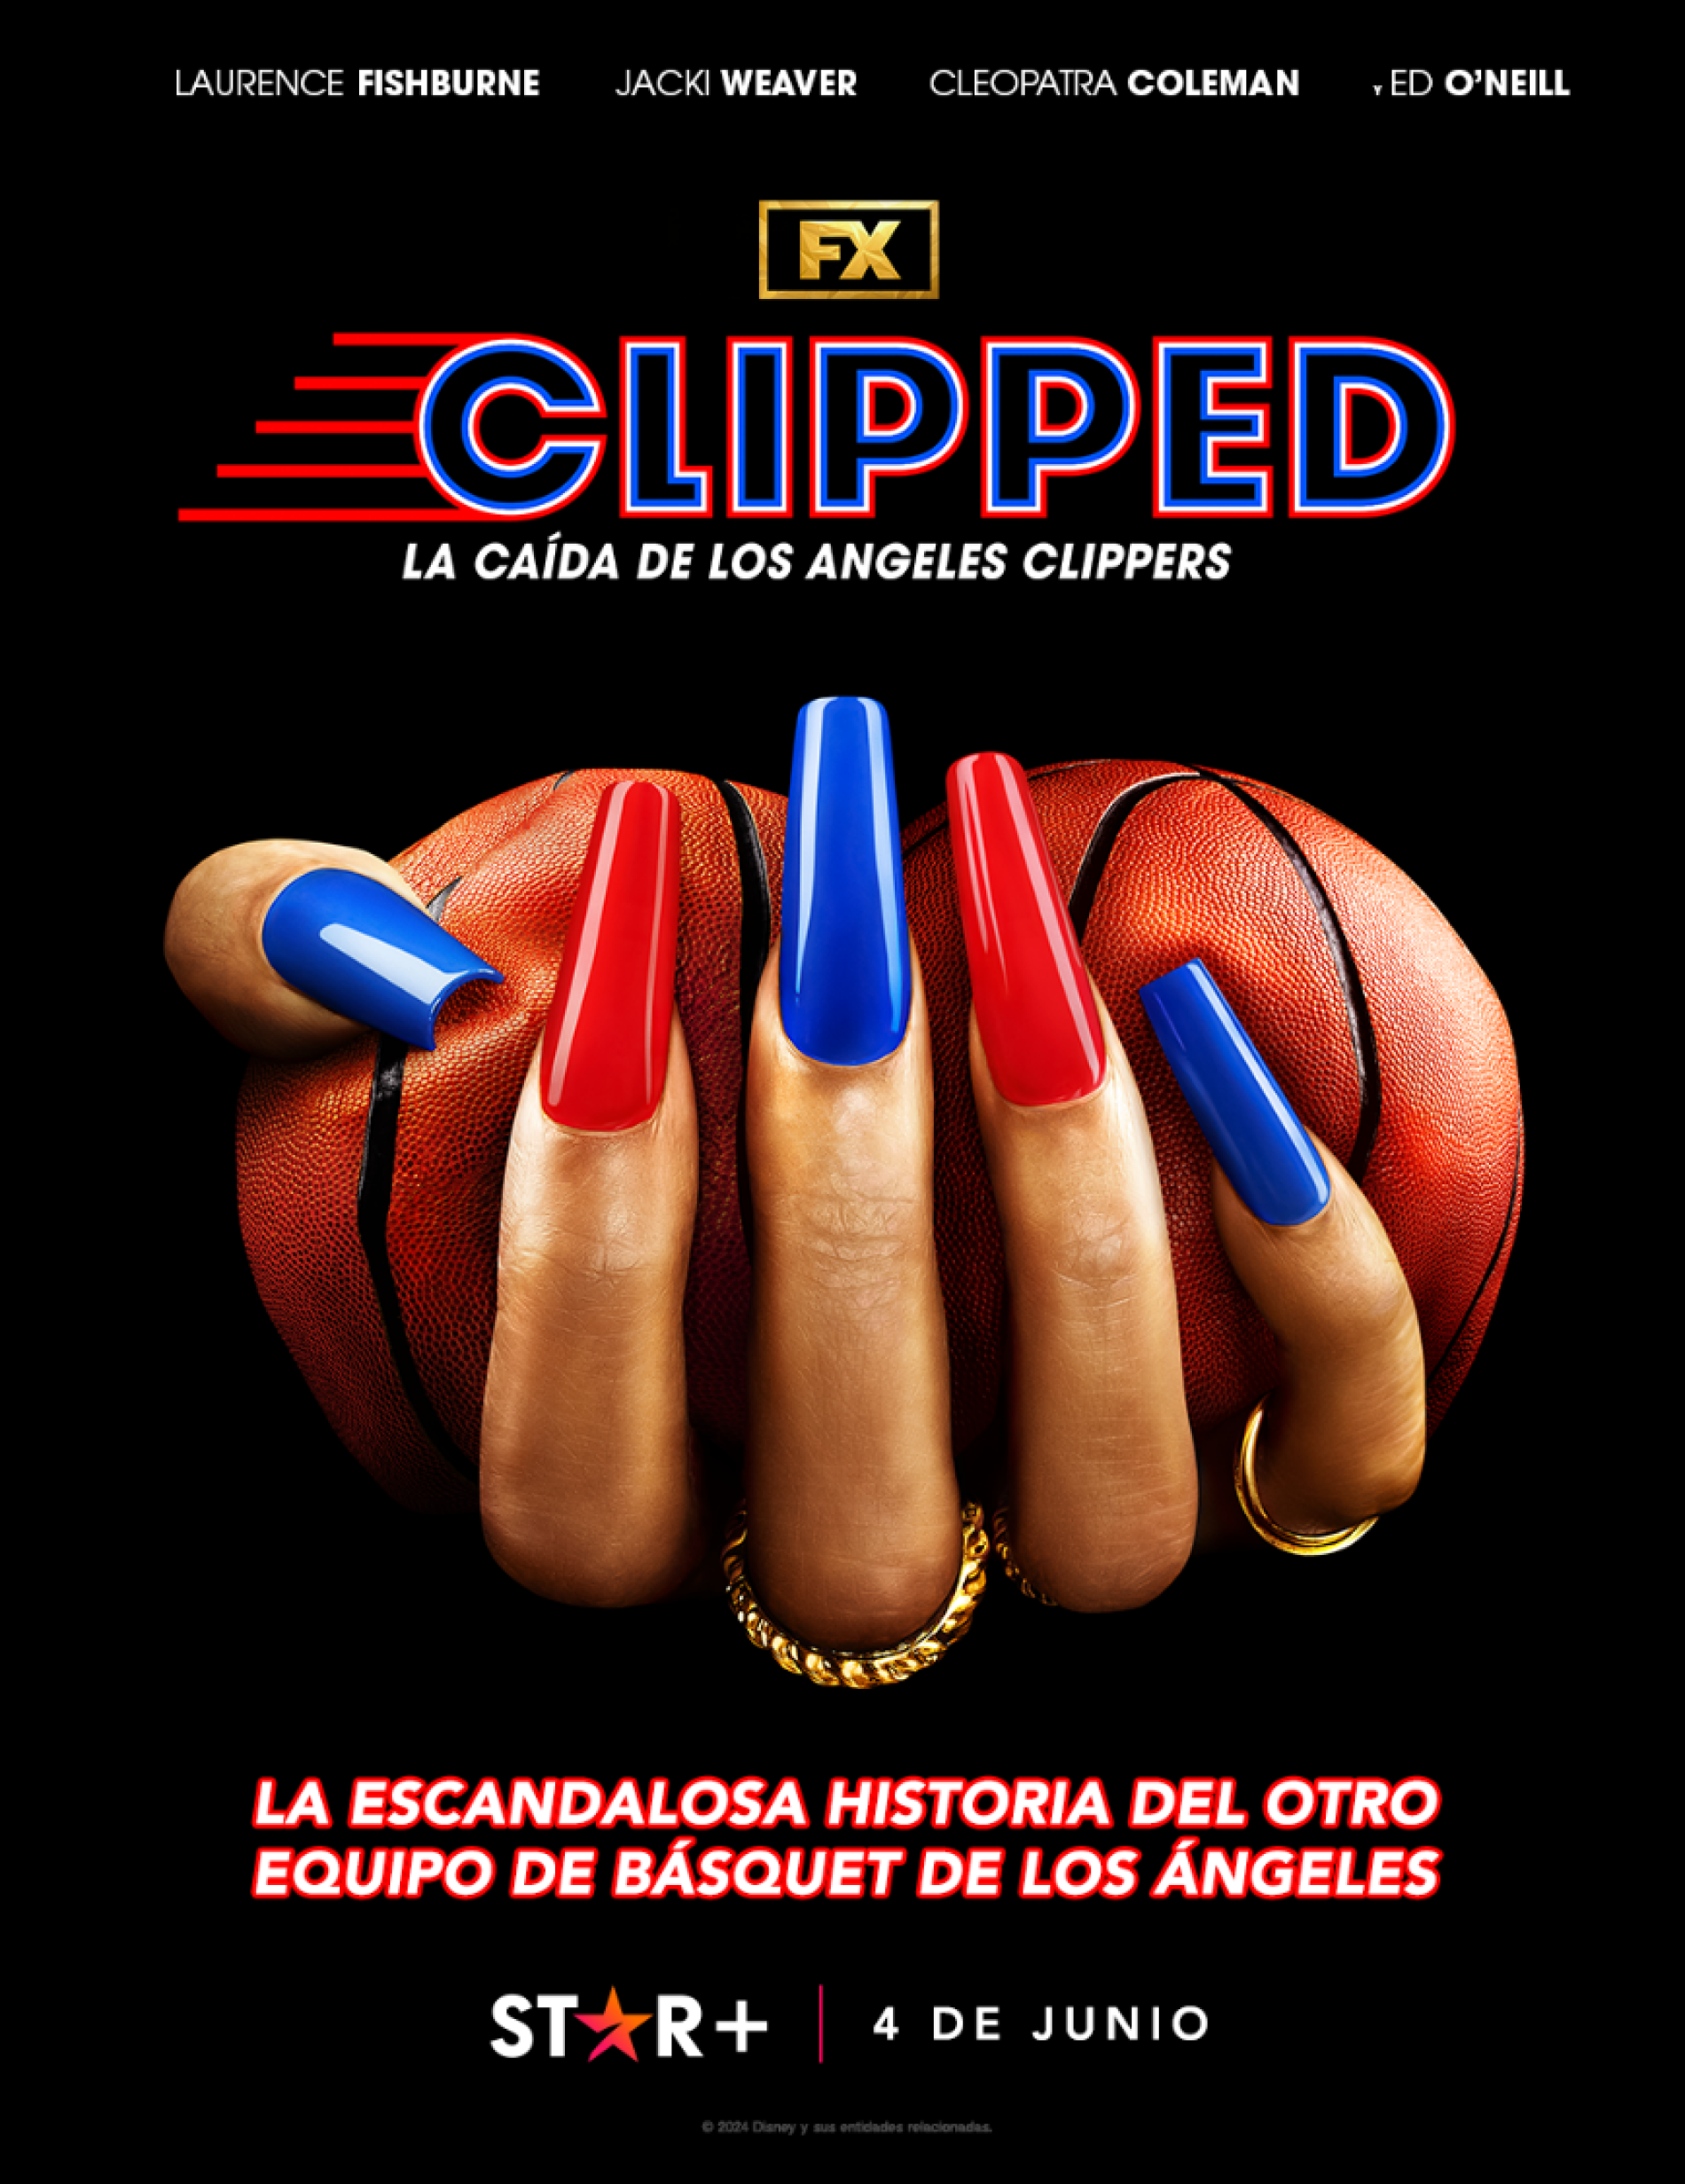 STAR+ PRESENTA EL NUEVO TRÁILER Y PÓSTER DE “CLIPPED: LA CAÍDA DE LOS ANGELES CLIPPERS”